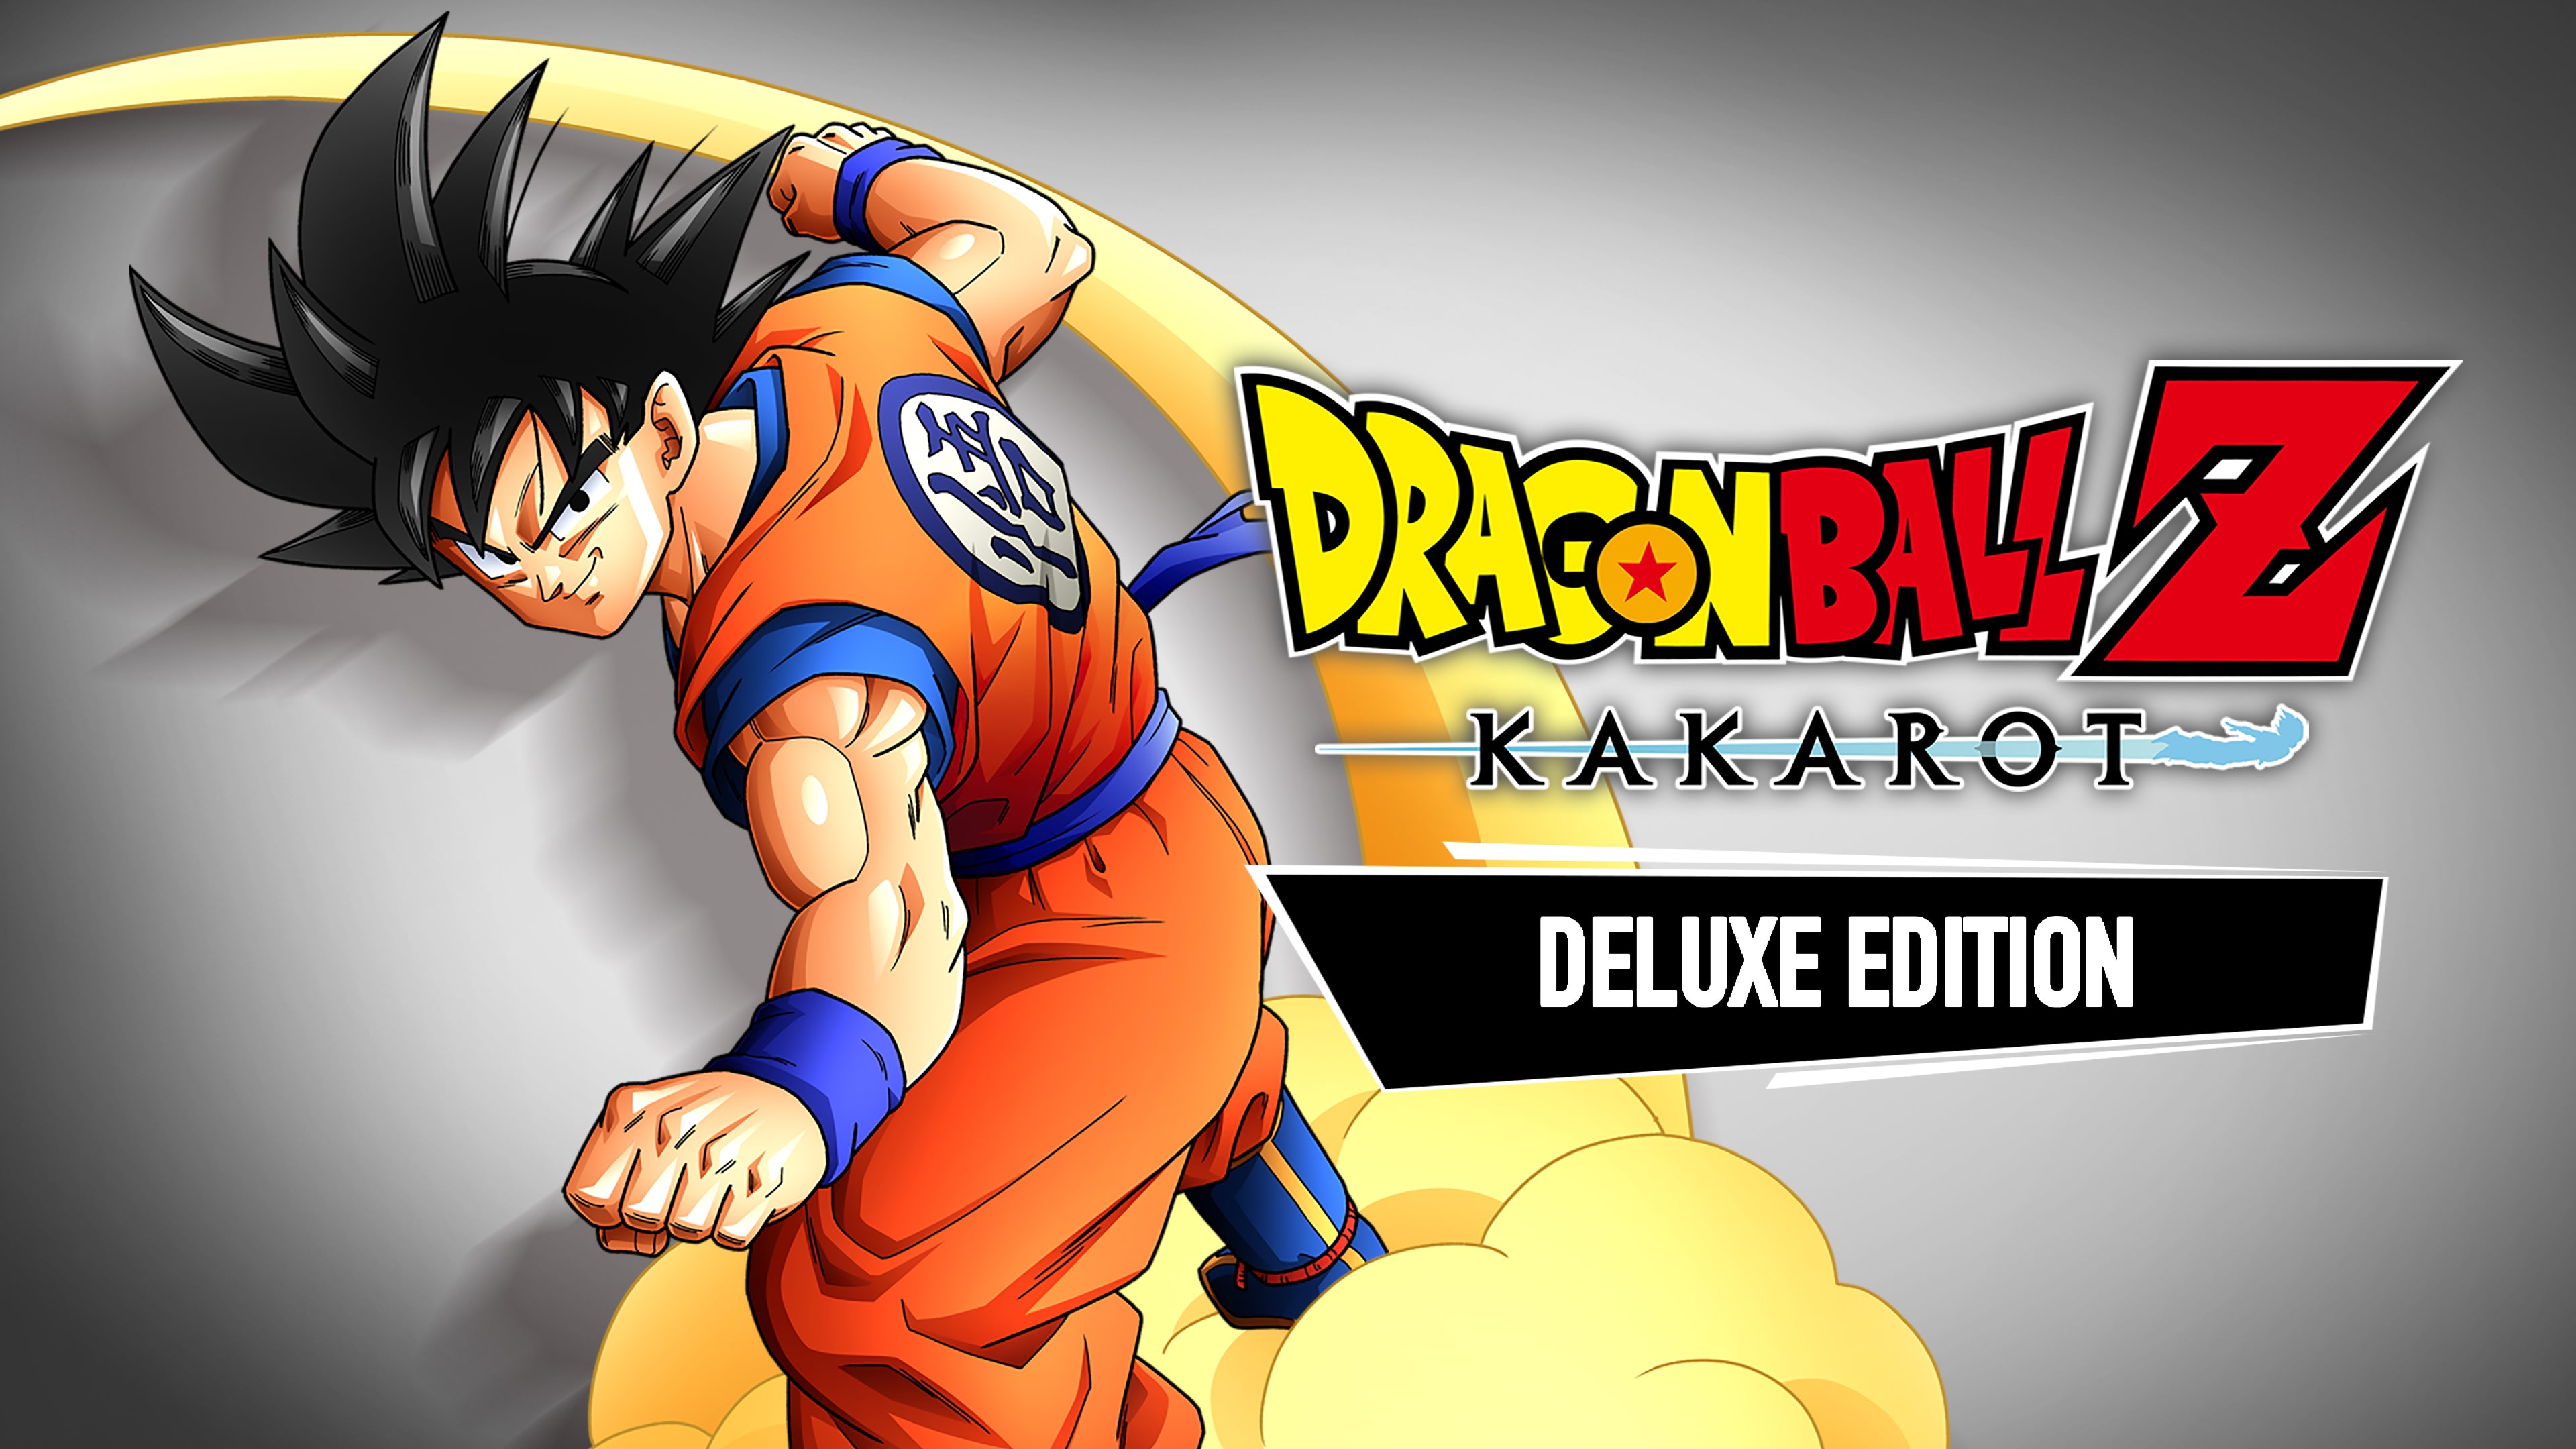 DRAGON BALL Z: KAKAROT Edición Deluxe PS5 - New Level